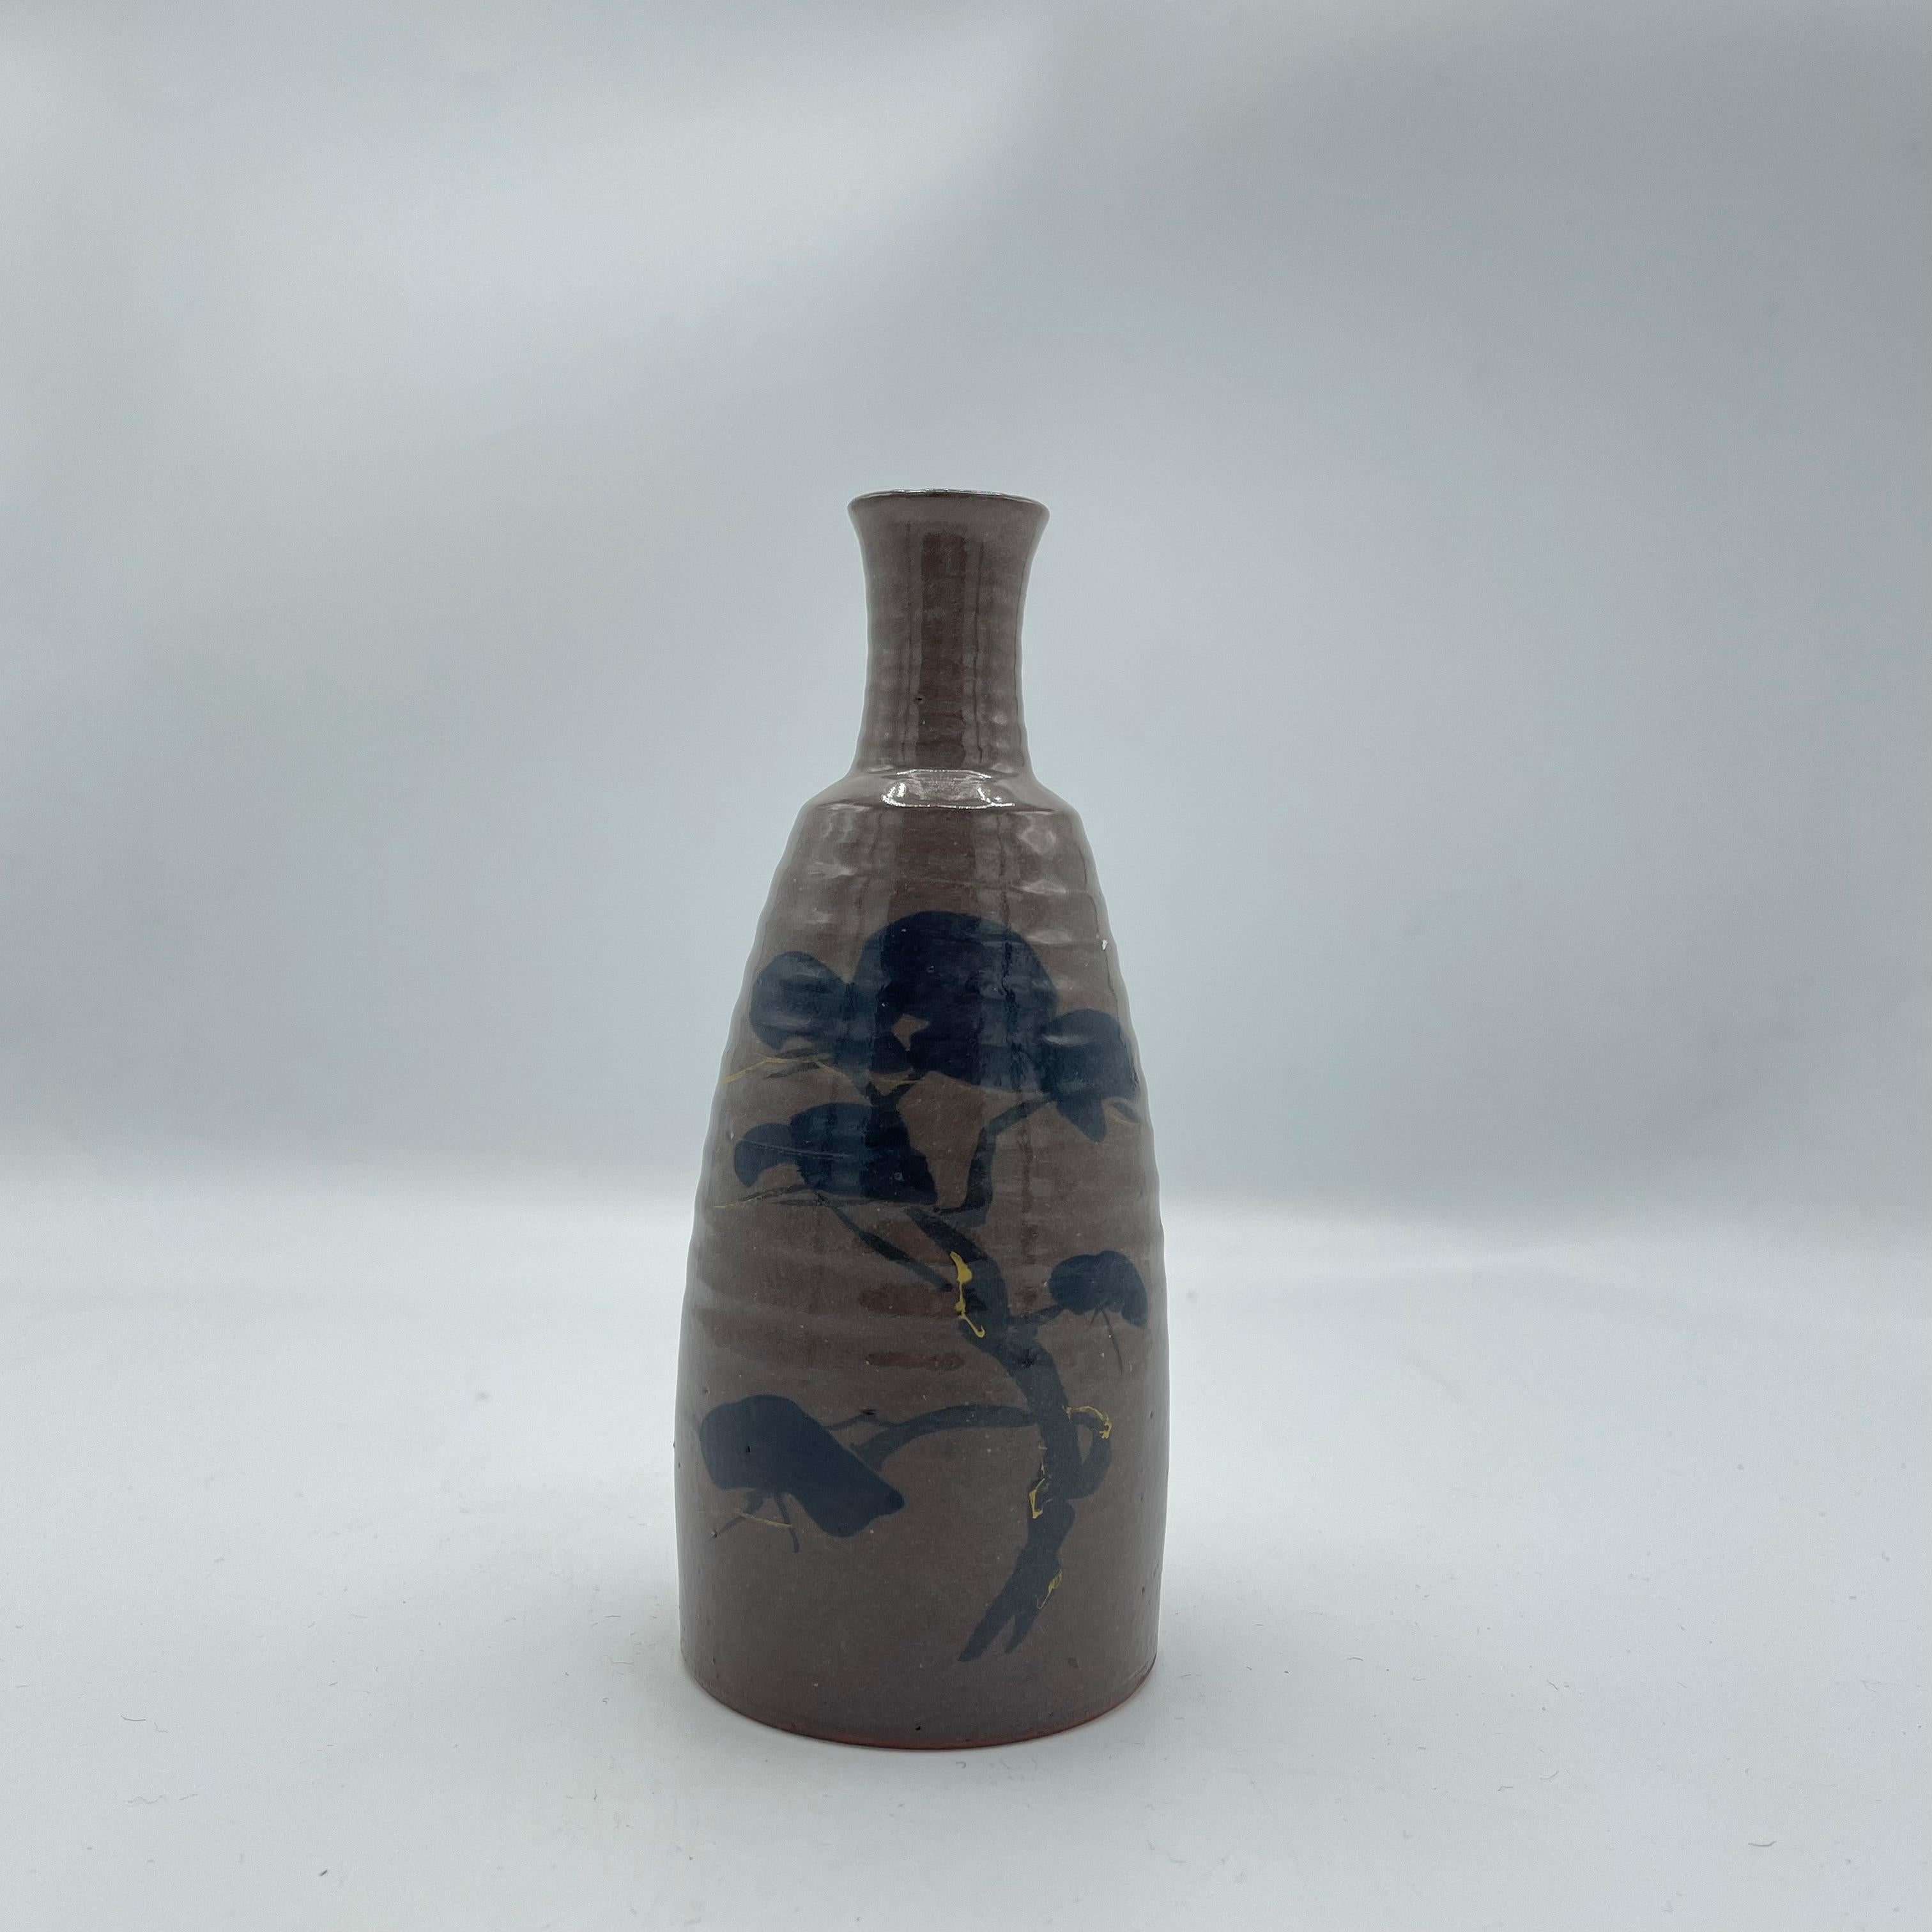 Dies ist eine Sake-Flasche, die in den 1980er Jahren in der Showa-Ära hergestellt wurde.
Sie ist aus Porzellan gefertigt und das Design ist handbemalt.
Diese Sake-Flasche kann auch als Blumenvase verwendet werden. 

Abmessungen:
5,5 x 5,5 x H13 cm